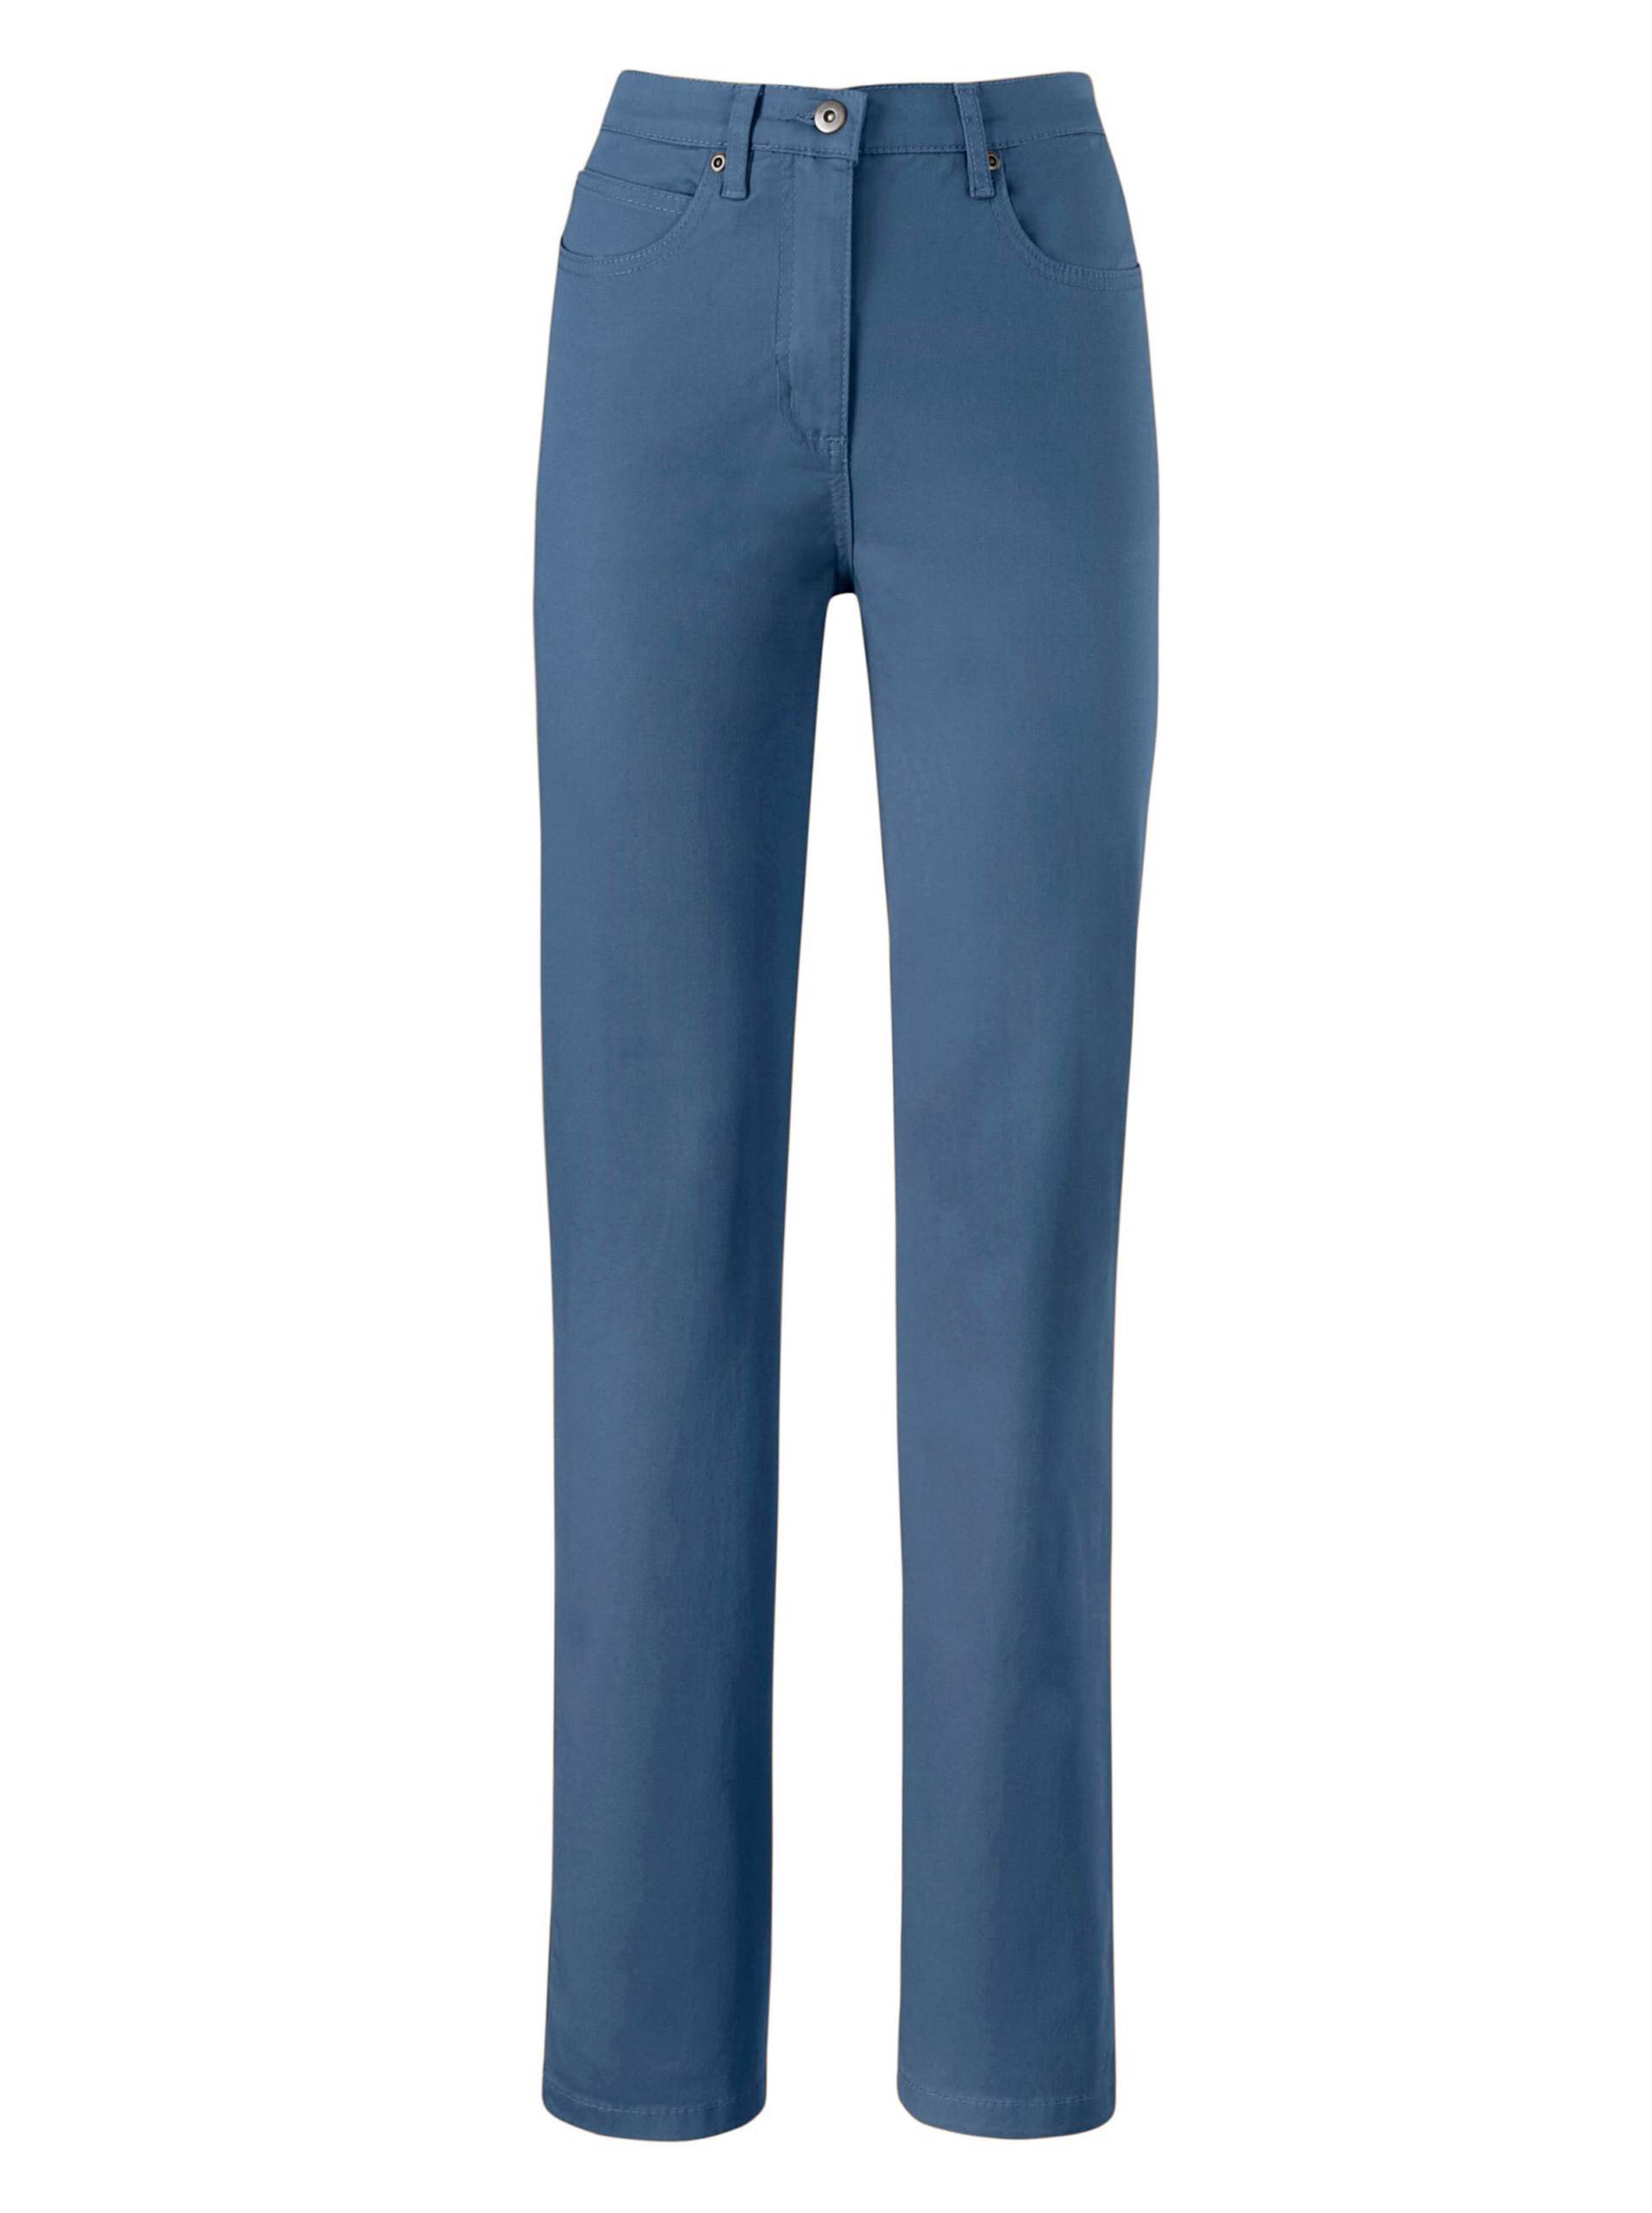 5-Pocket-Jeans in blue-bleached von heine